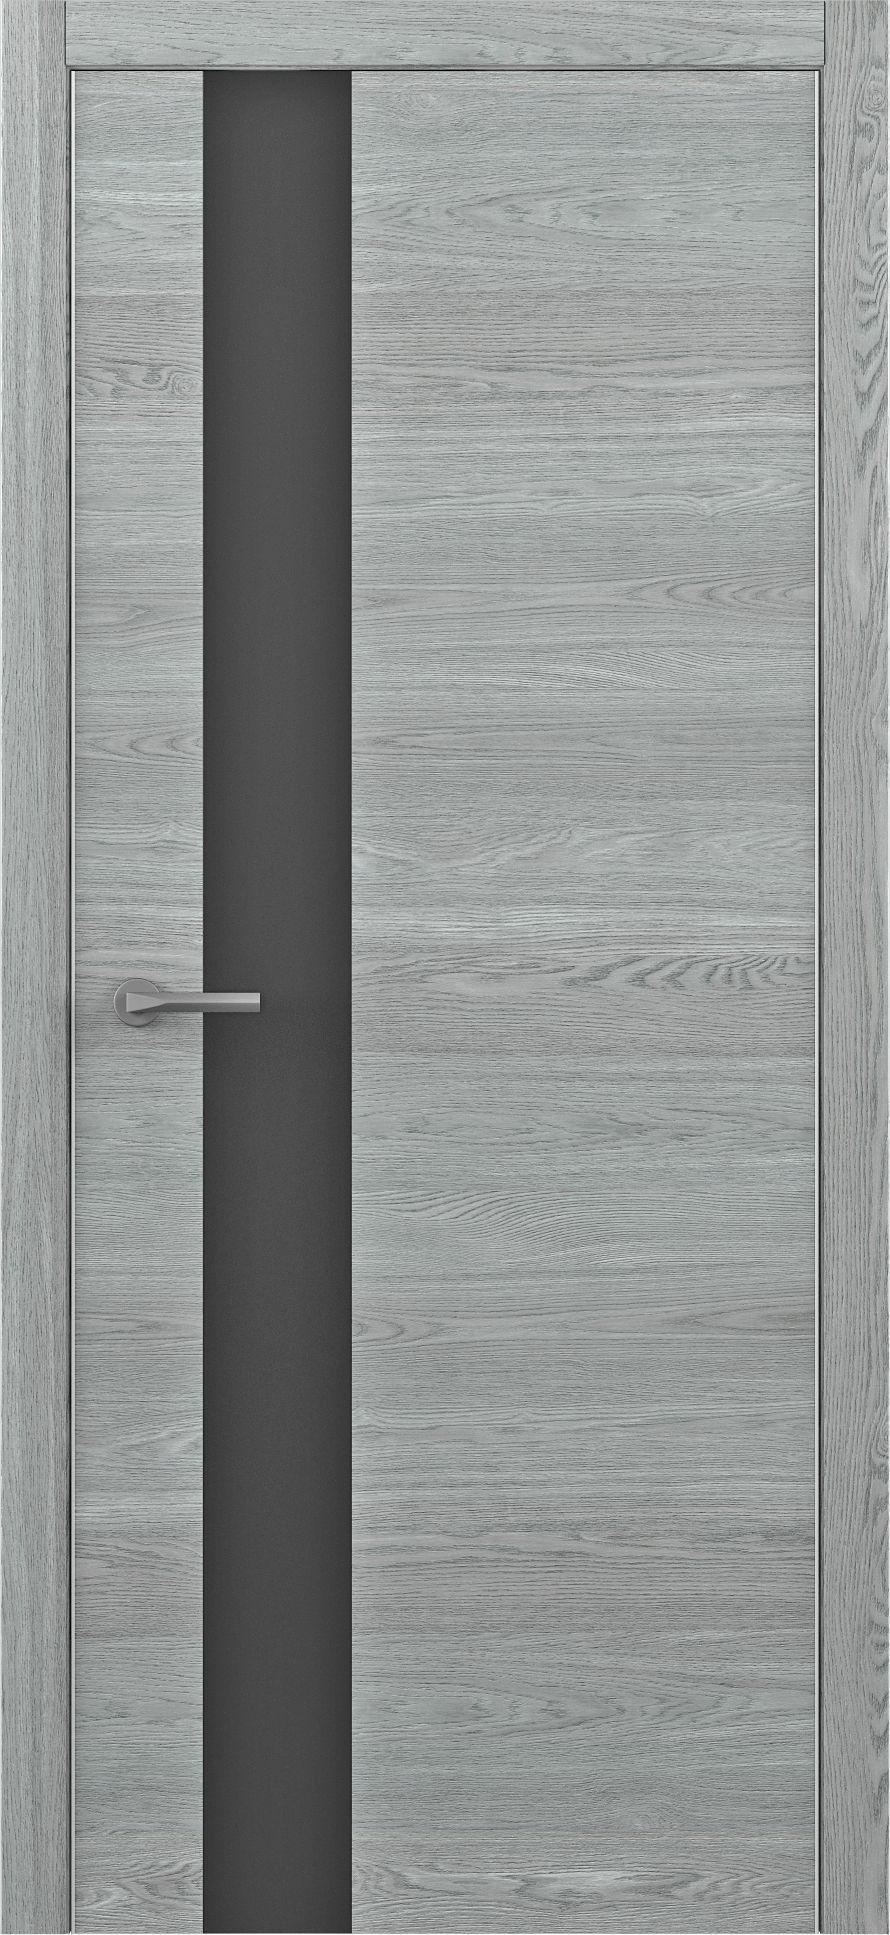 Полотно дверное остекленное Art-шпон G 600 дуб скальный, ст.черное сх.STATUS-1 (замок Morelli 1895)